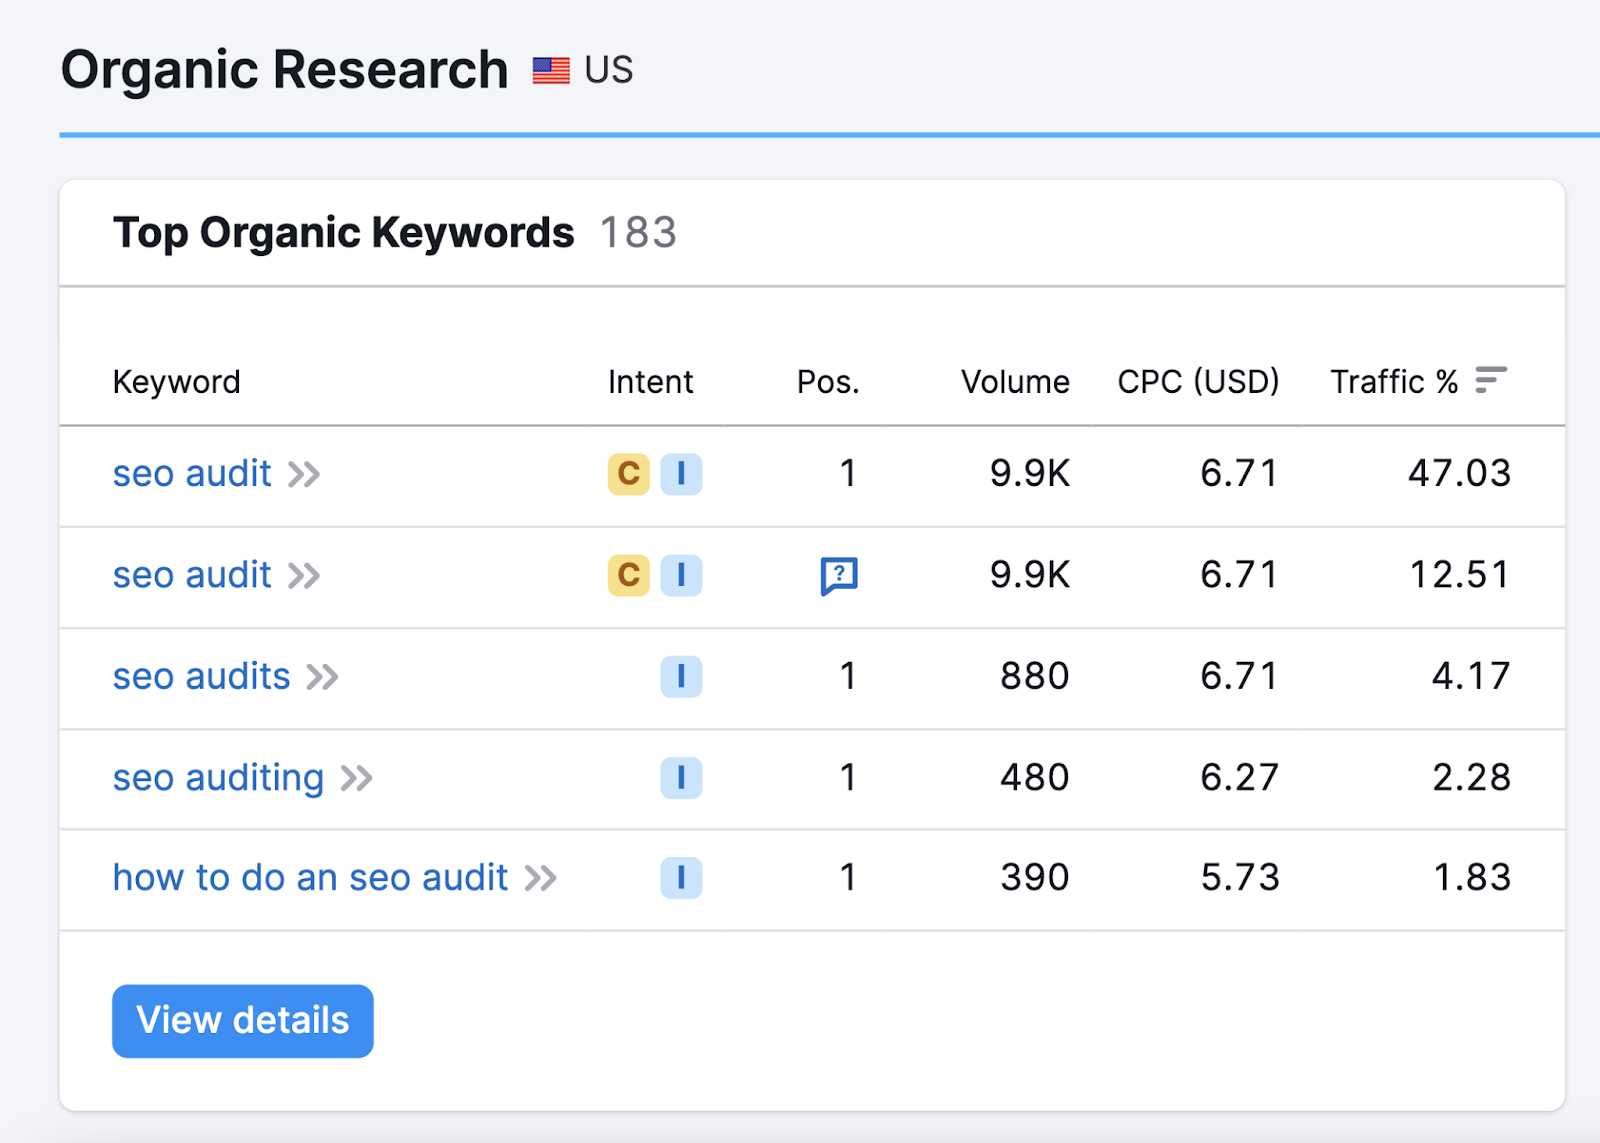 Semrush blog post on SEO audits ranks for 183 keywords